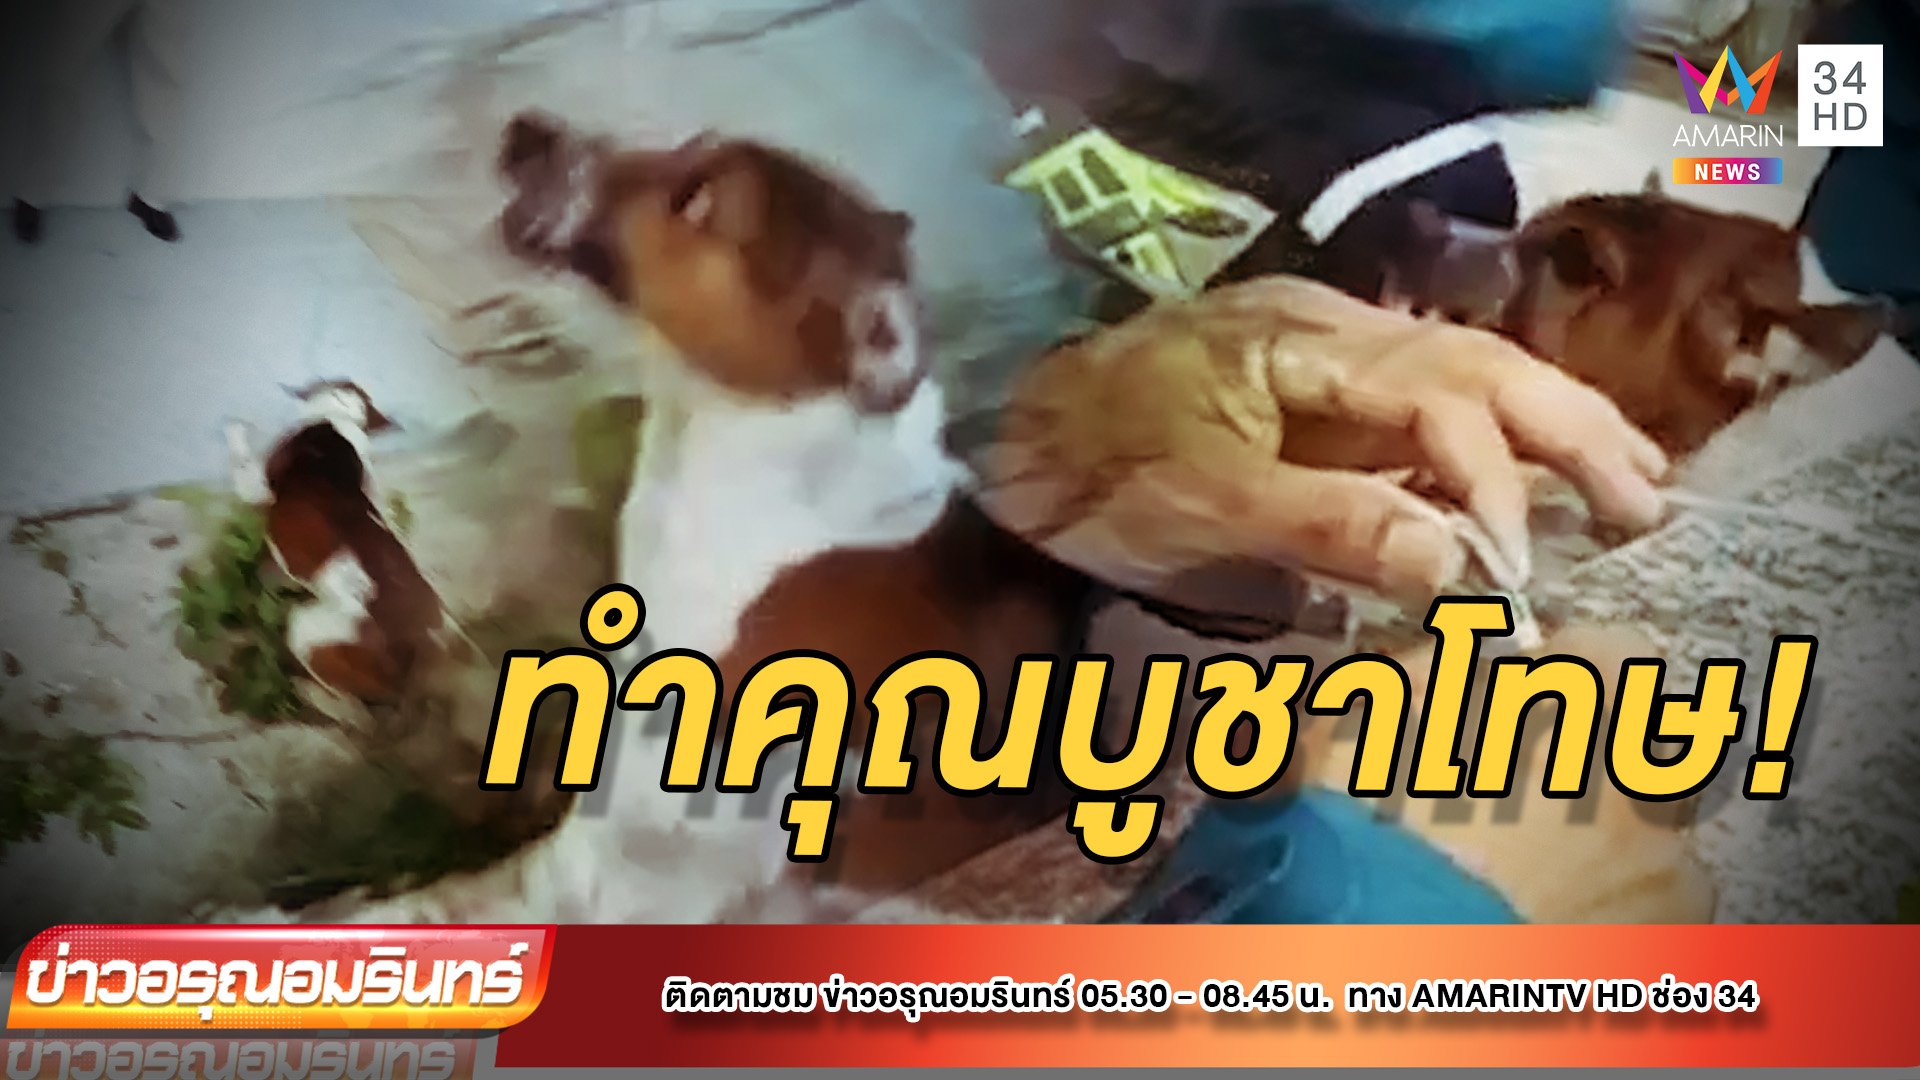 ช่วยหมาหัวติดกำแพง กู้ภัยเกือบโดนขย้ำคอ! | ข่าวอรุณอมรินทร์ | 24 พ.ค. 65 | AMARIN TVHD34